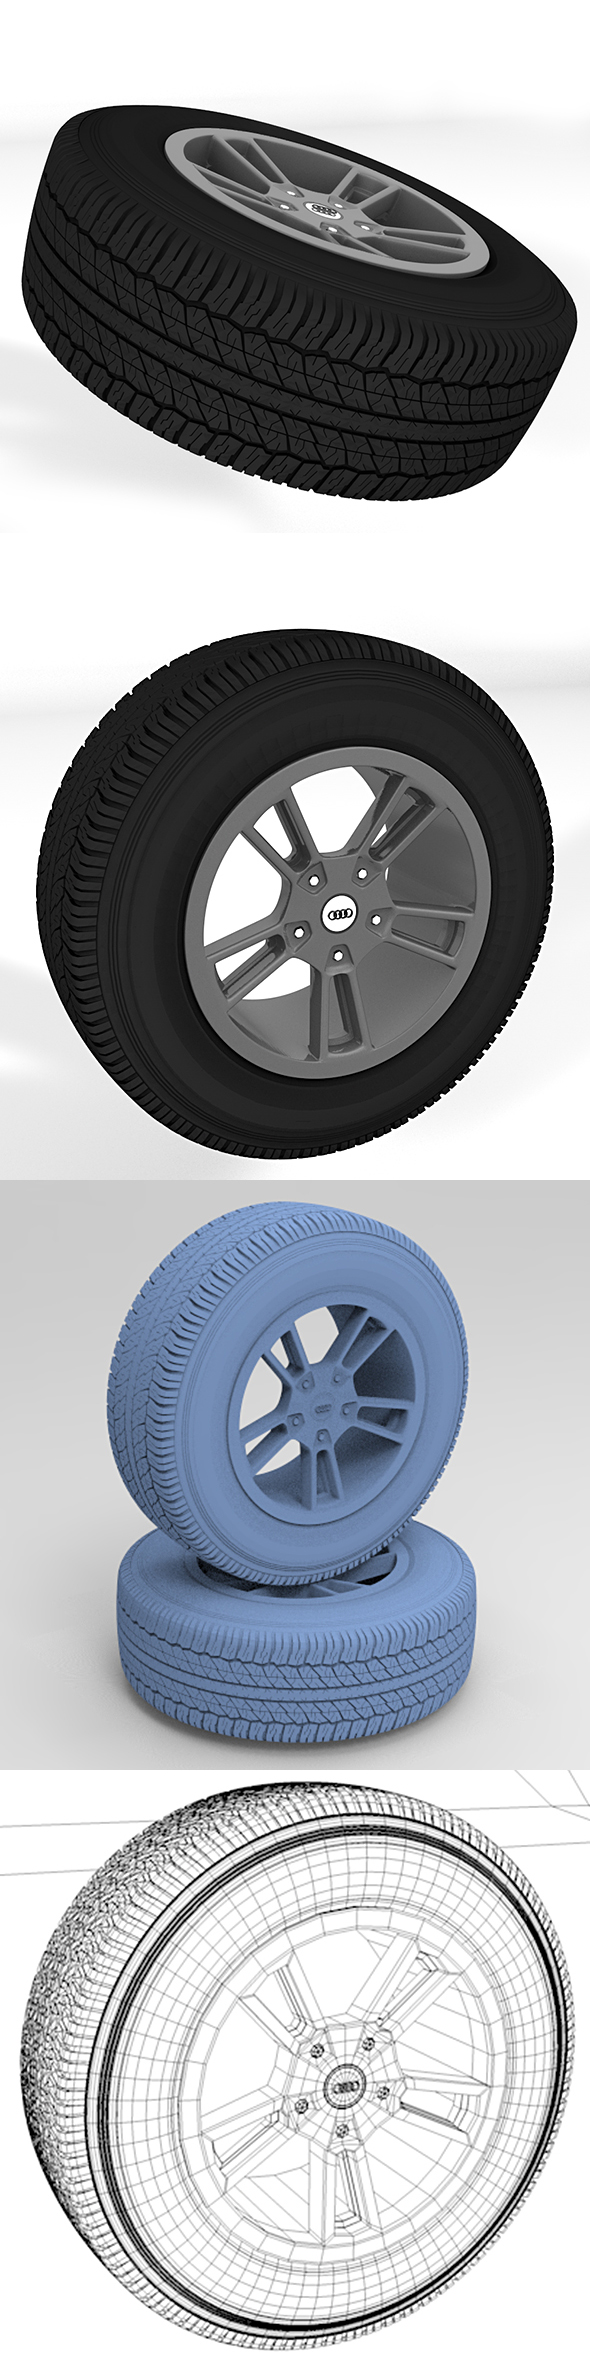 Standard wheel tire